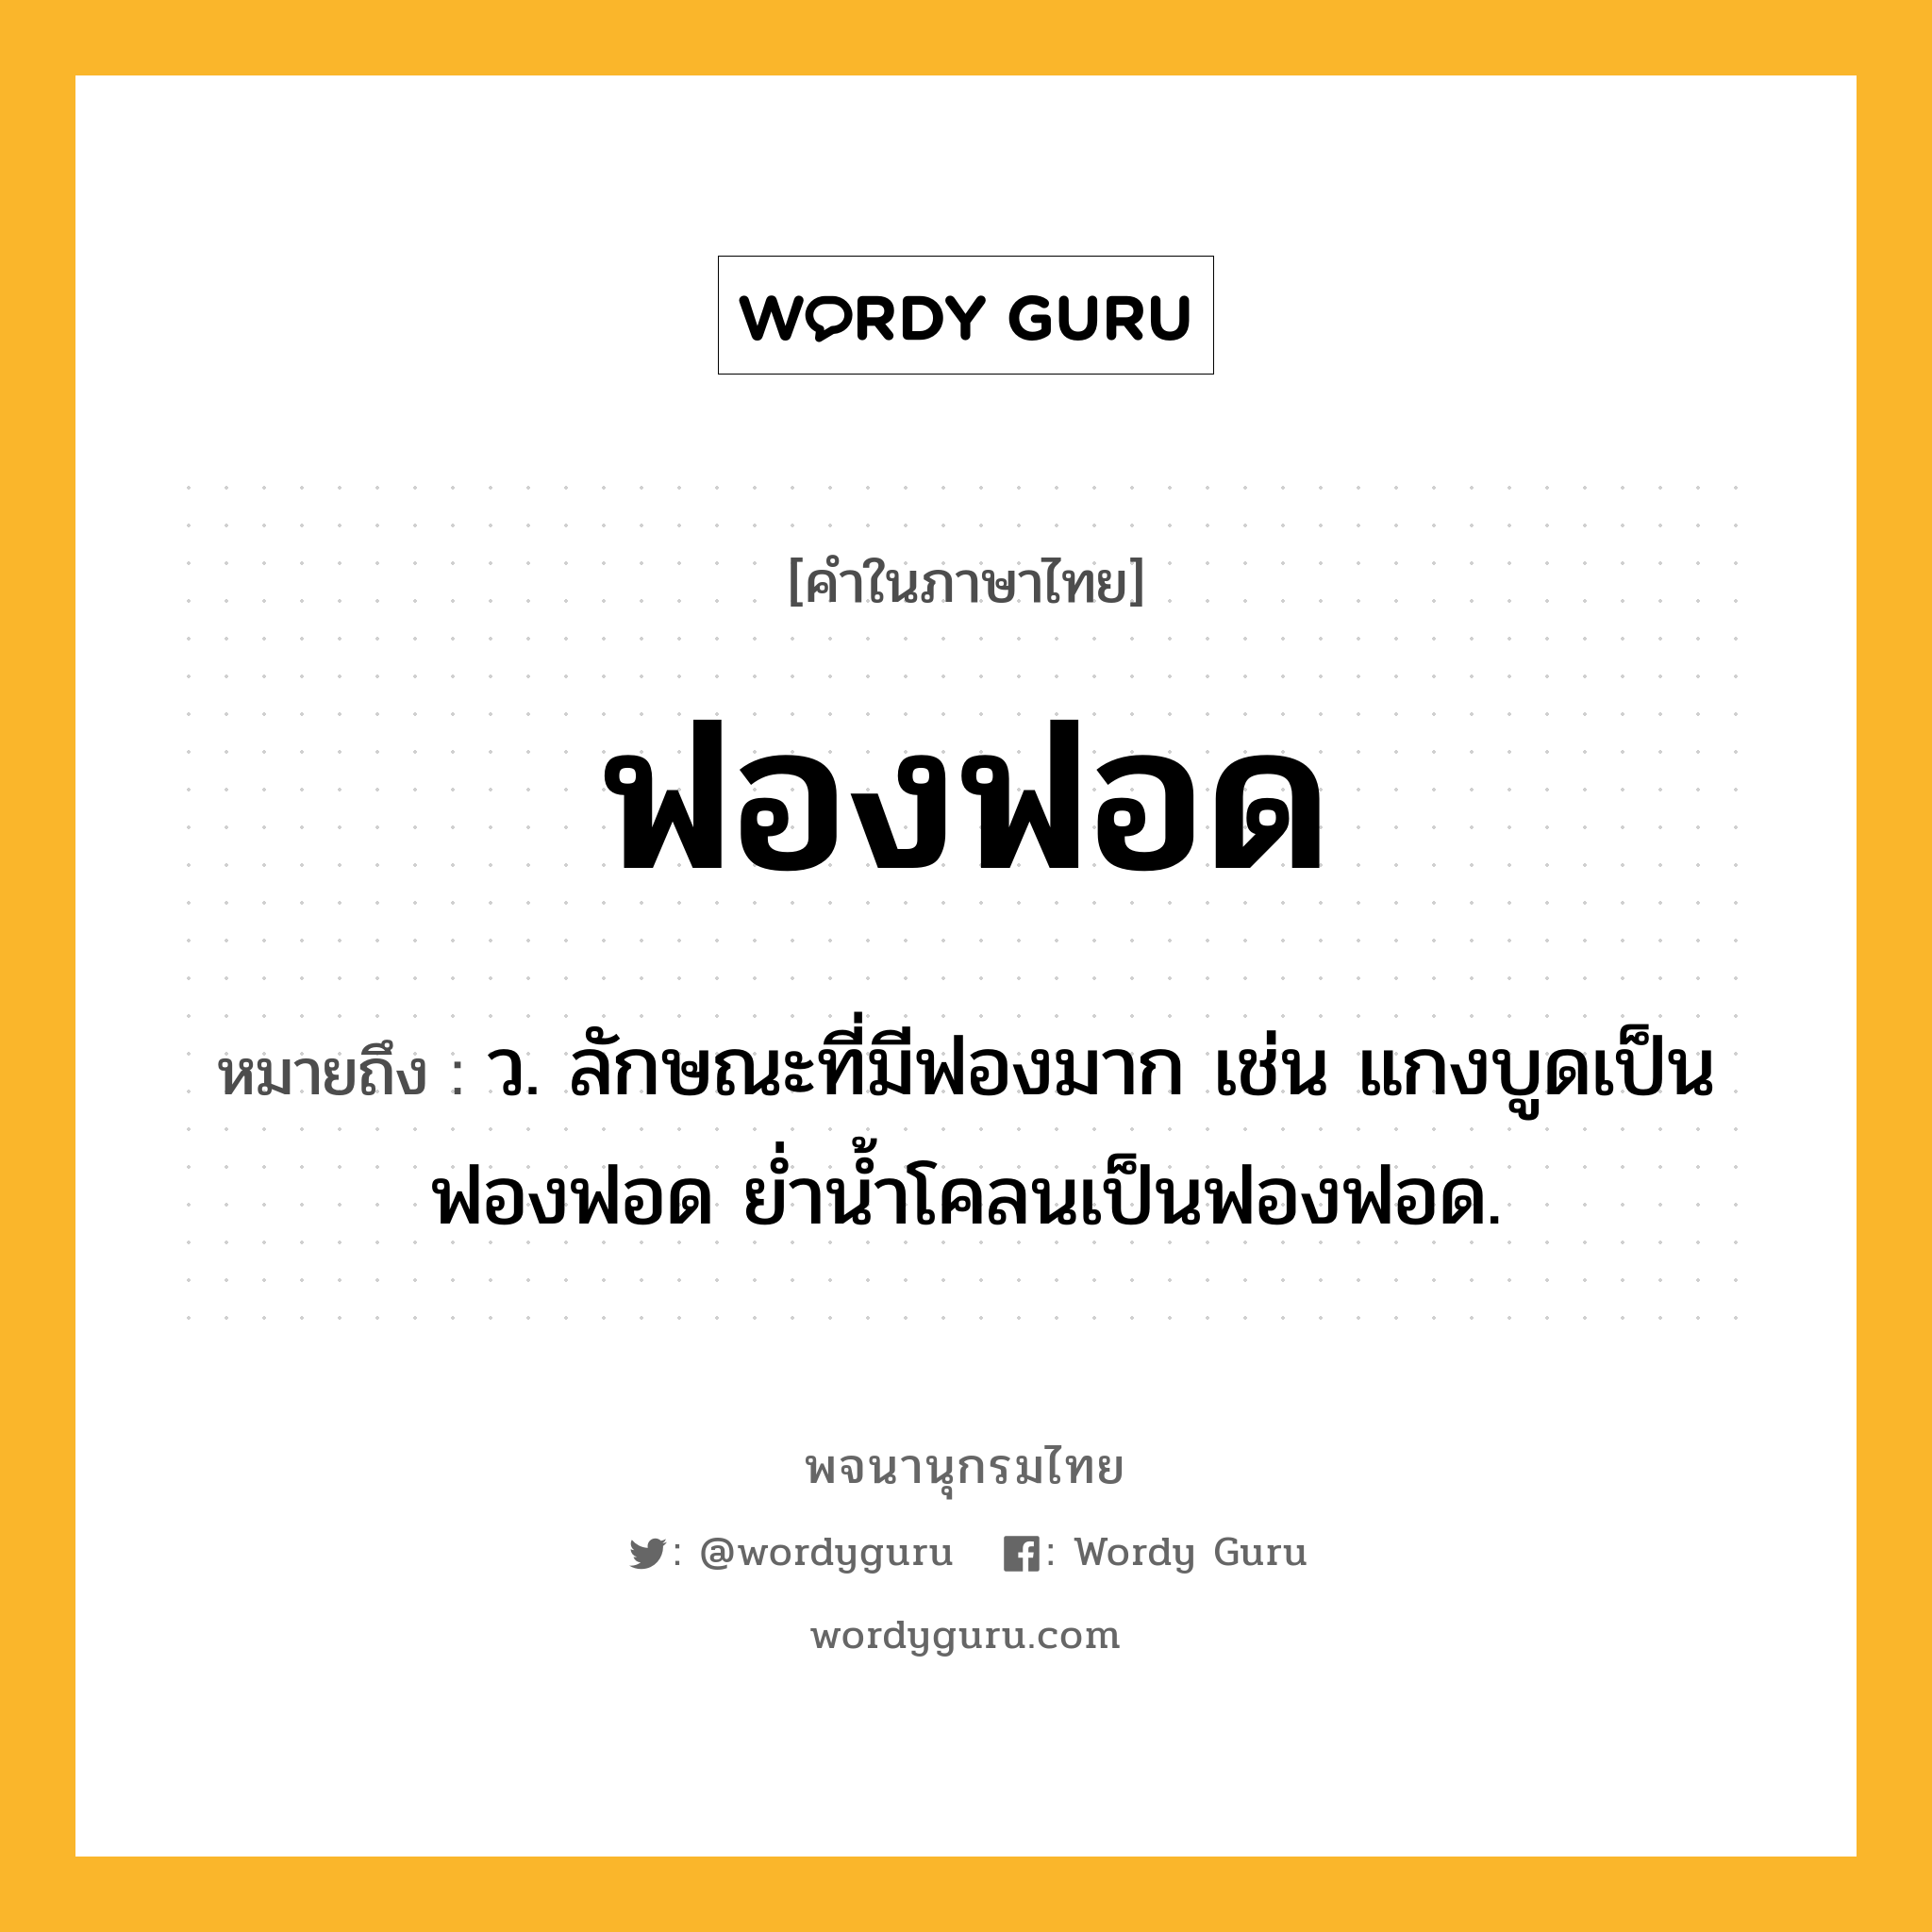 ฟองฟอด ความหมาย หมายถึงอะไร?, คำในภาษาไทย ฟองฟอด หมายถึง ว. ลักษณะที่มีฟองมาก เช่น แกงบูดเป็นฟองฟอด ย่ำน้ำโคลนเป็นฟองฟอด.